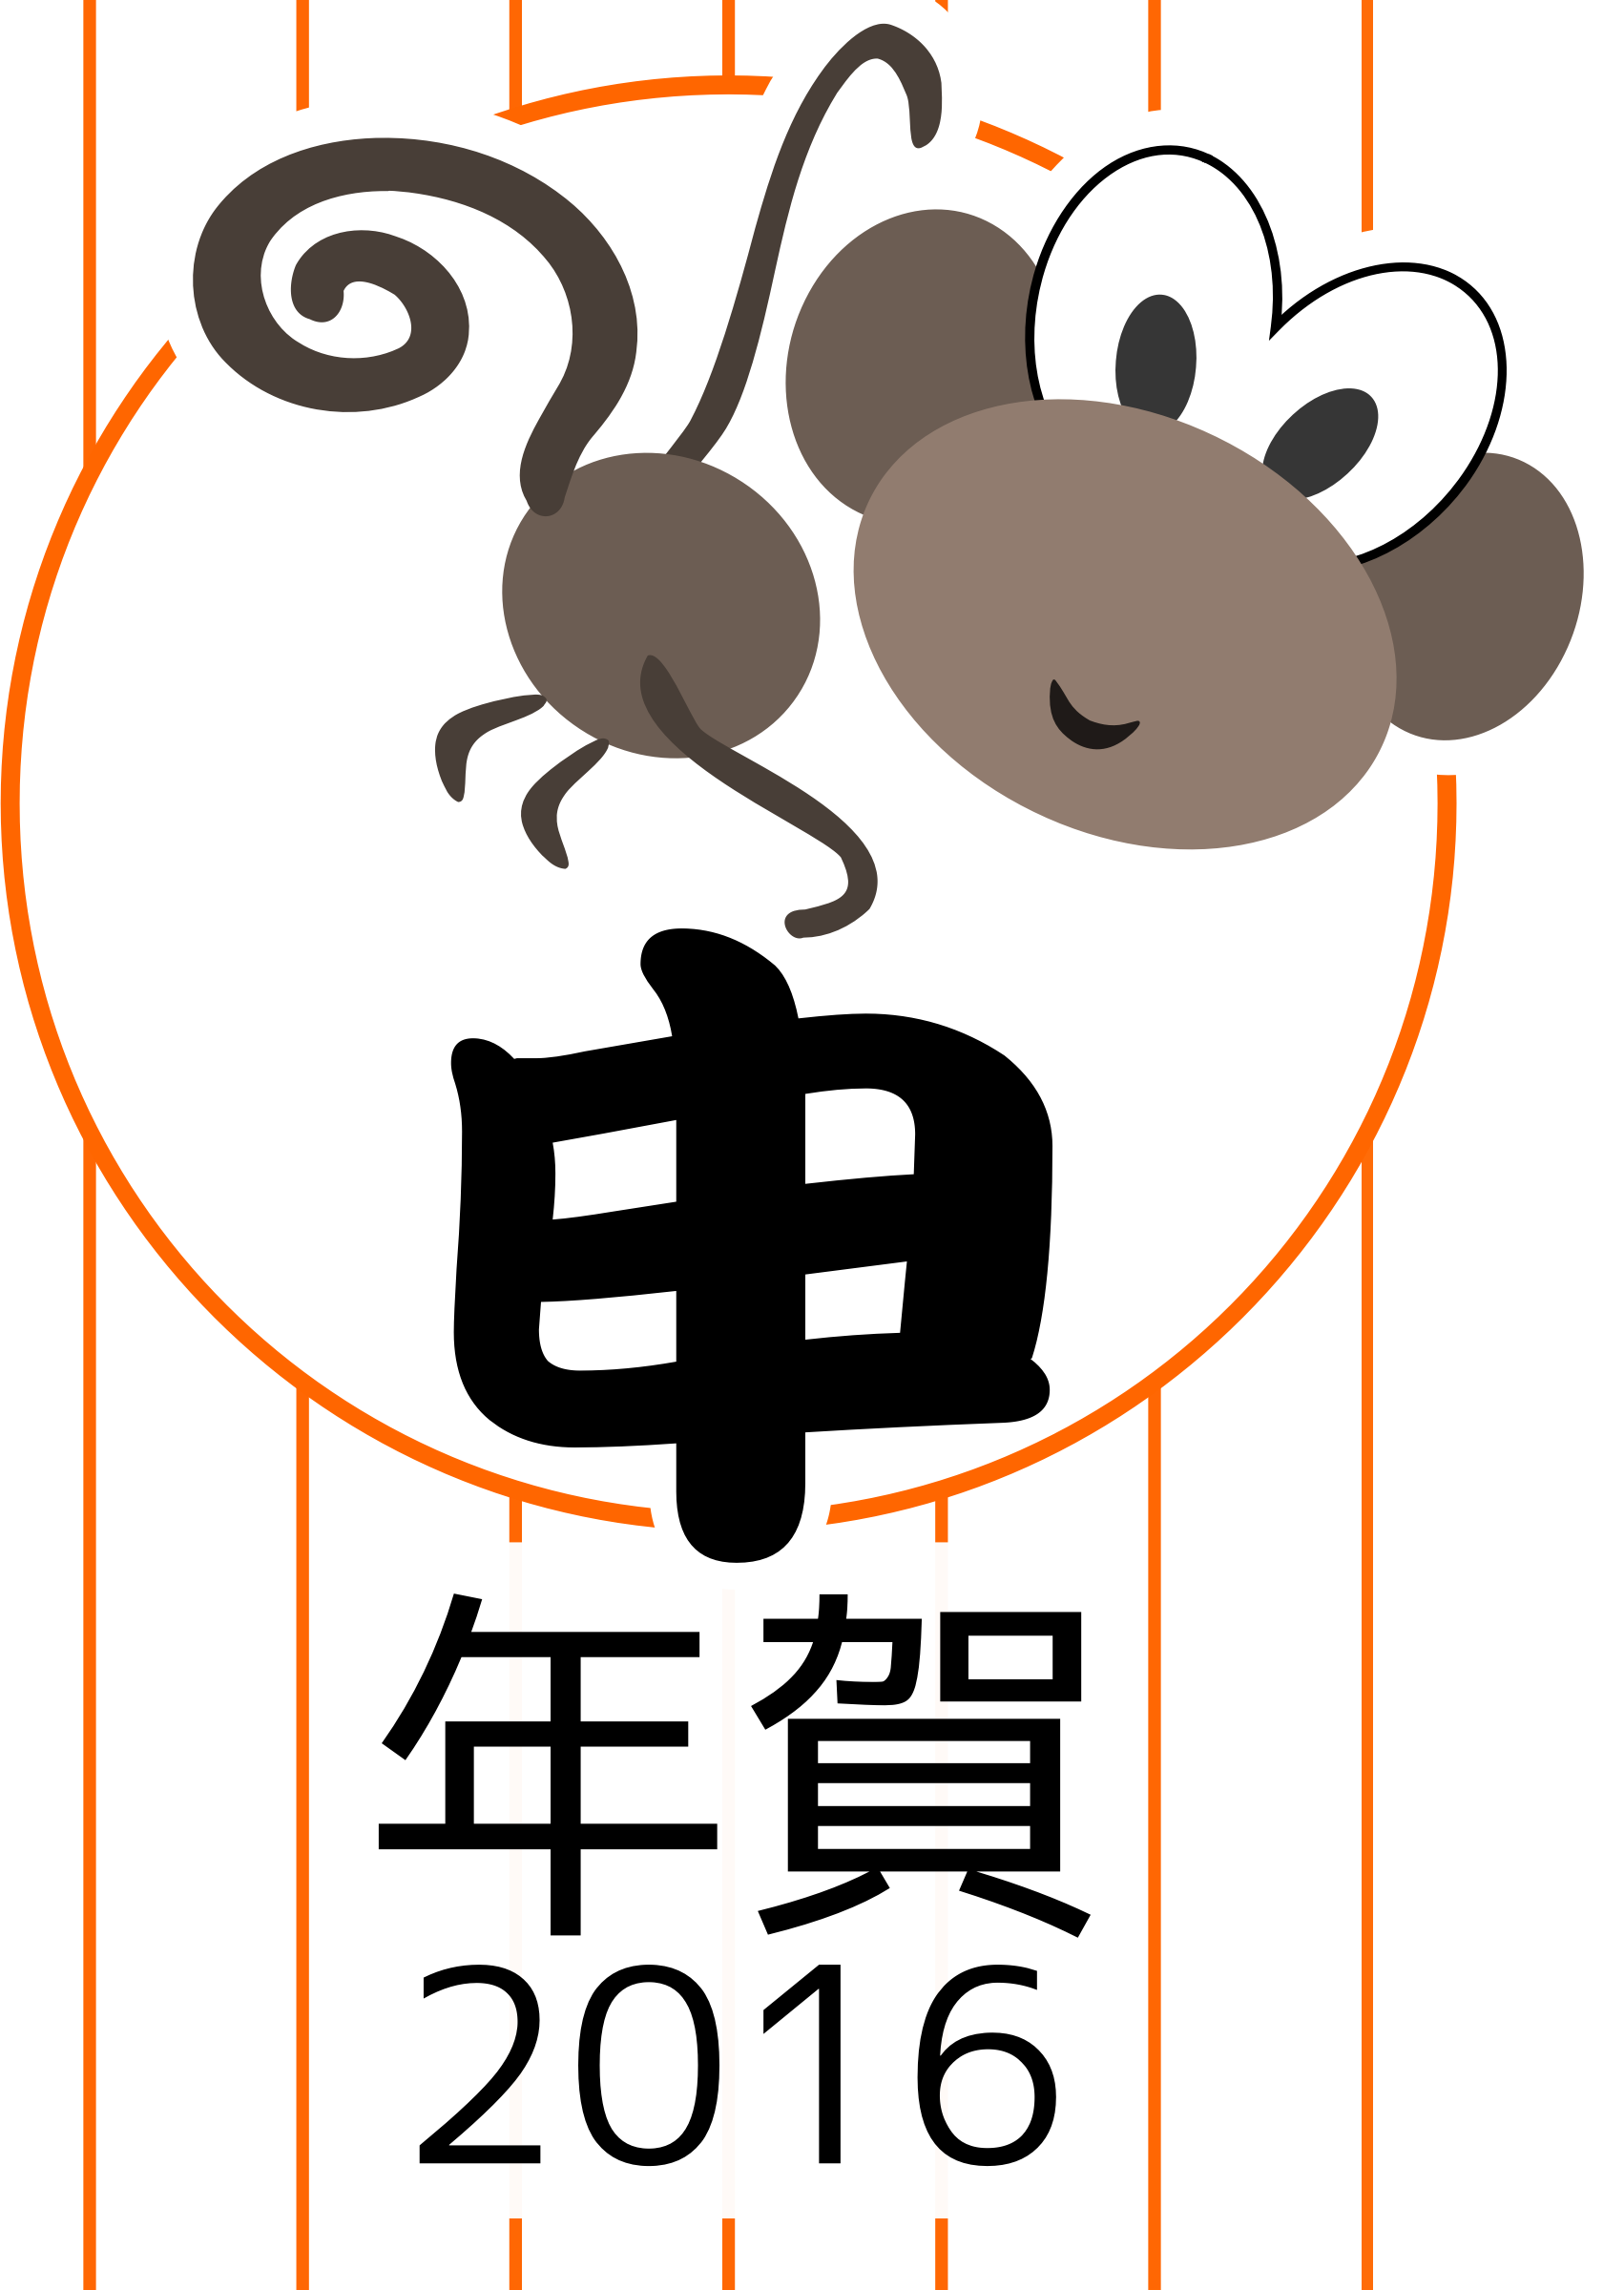 Japan Clip Art - Chinesische Tierkreis-ziegen-neues Jahr 2015 Postkarte (1702x2400)